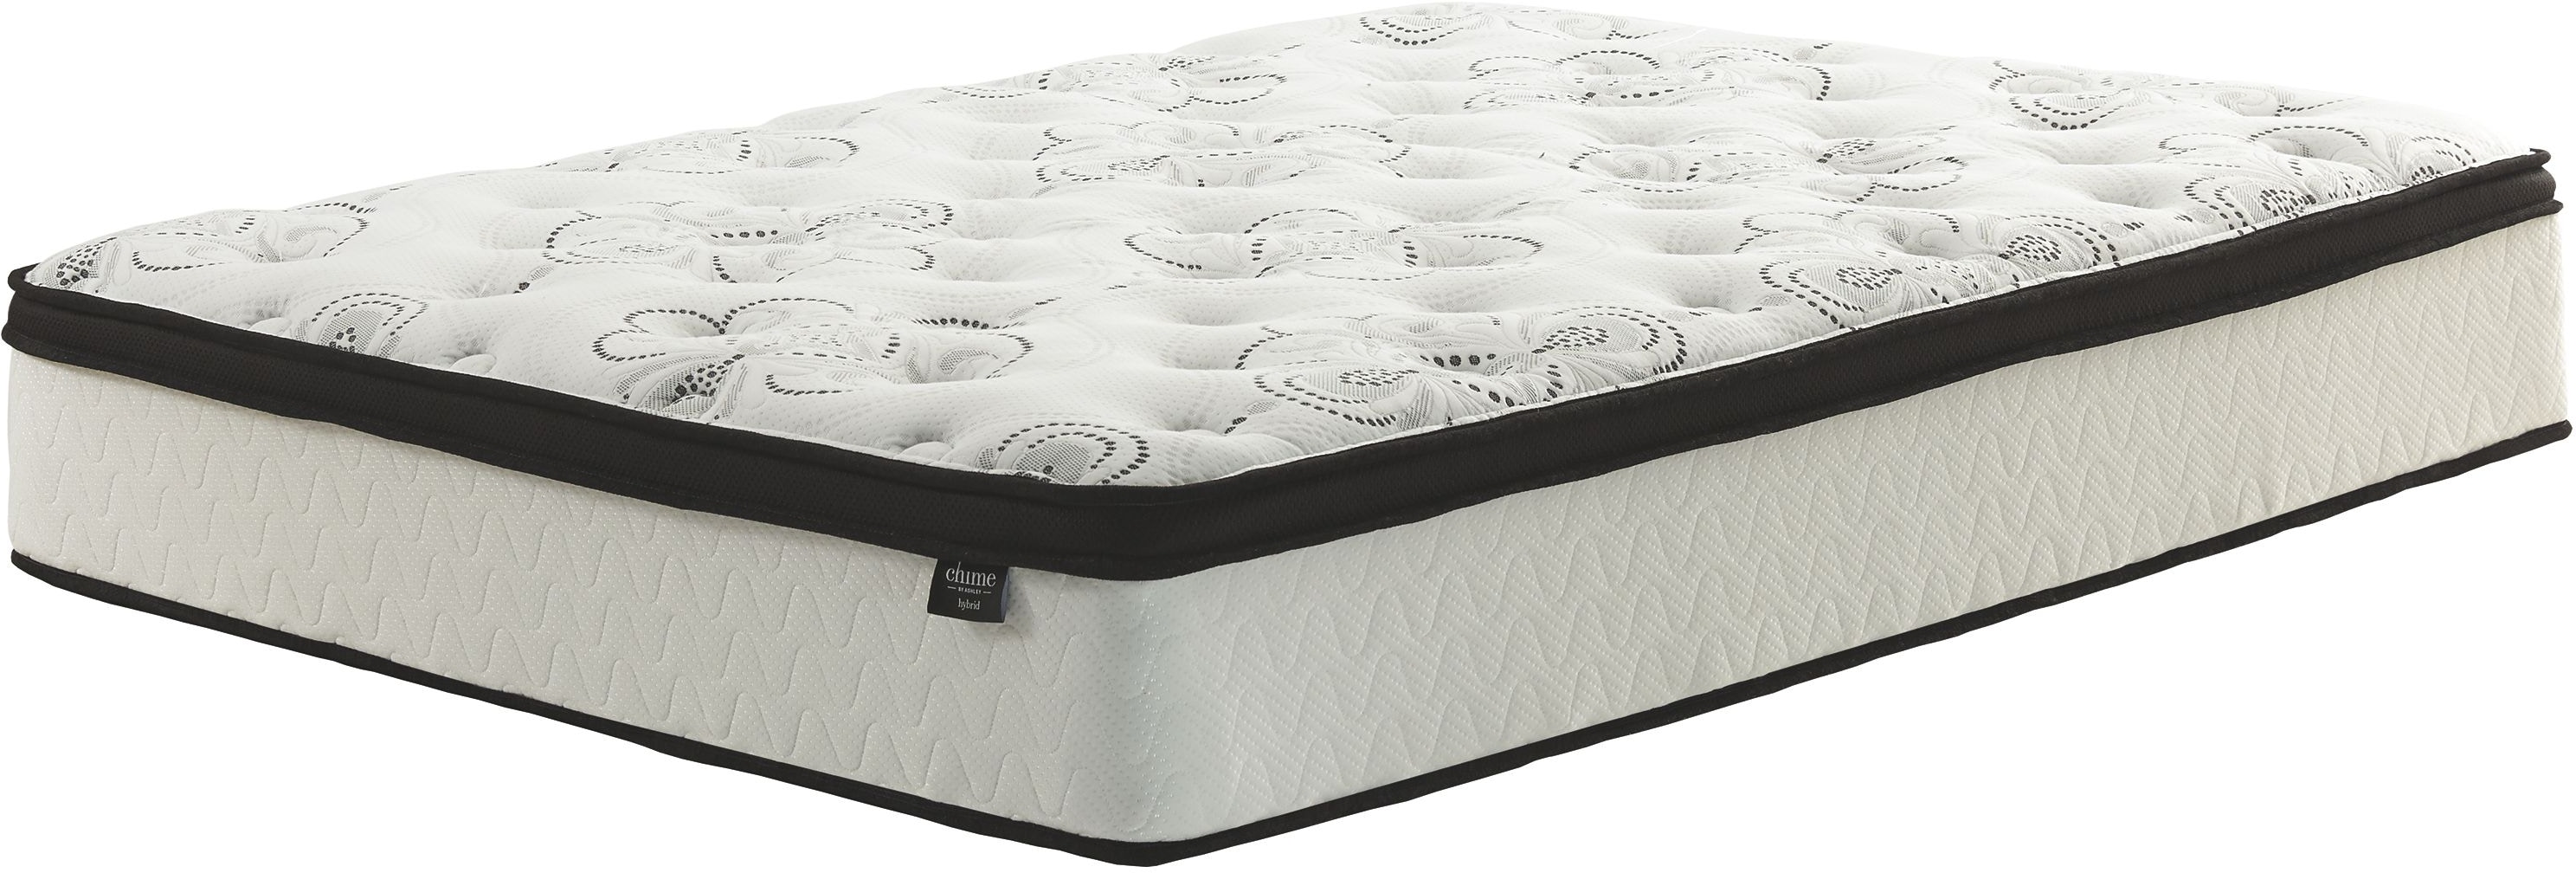 sierra sleep mattress in a box